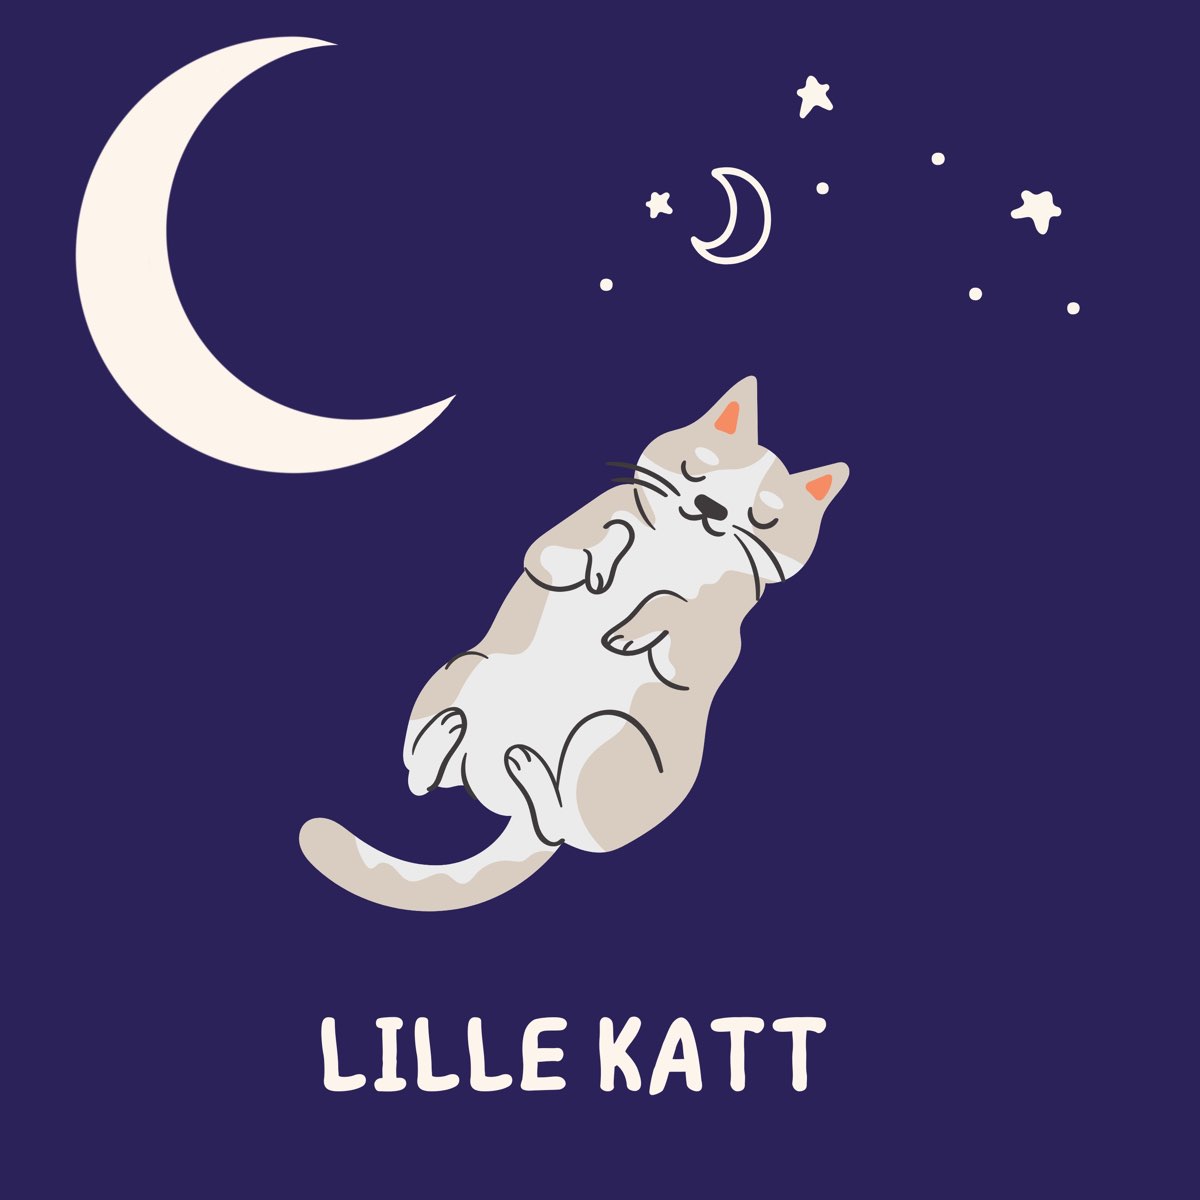 Lille Katt - Single - Album by Iris Avory - Apple Music